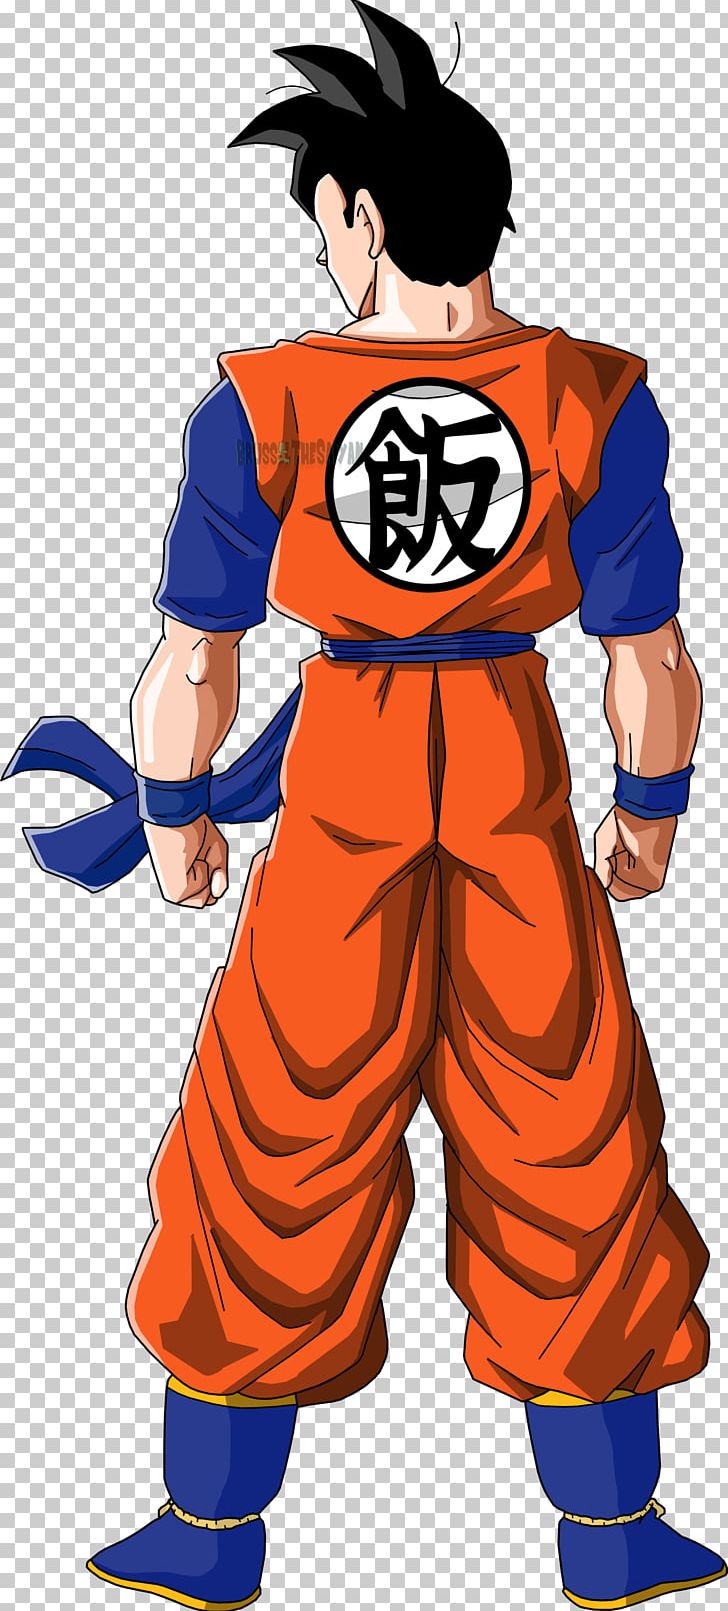 Gohan Goku Trunks Frieza Majin Buu PNG, Clipart, Action Figure, Arm Muscle, Art, Boy, Cartoon Free PNG Download